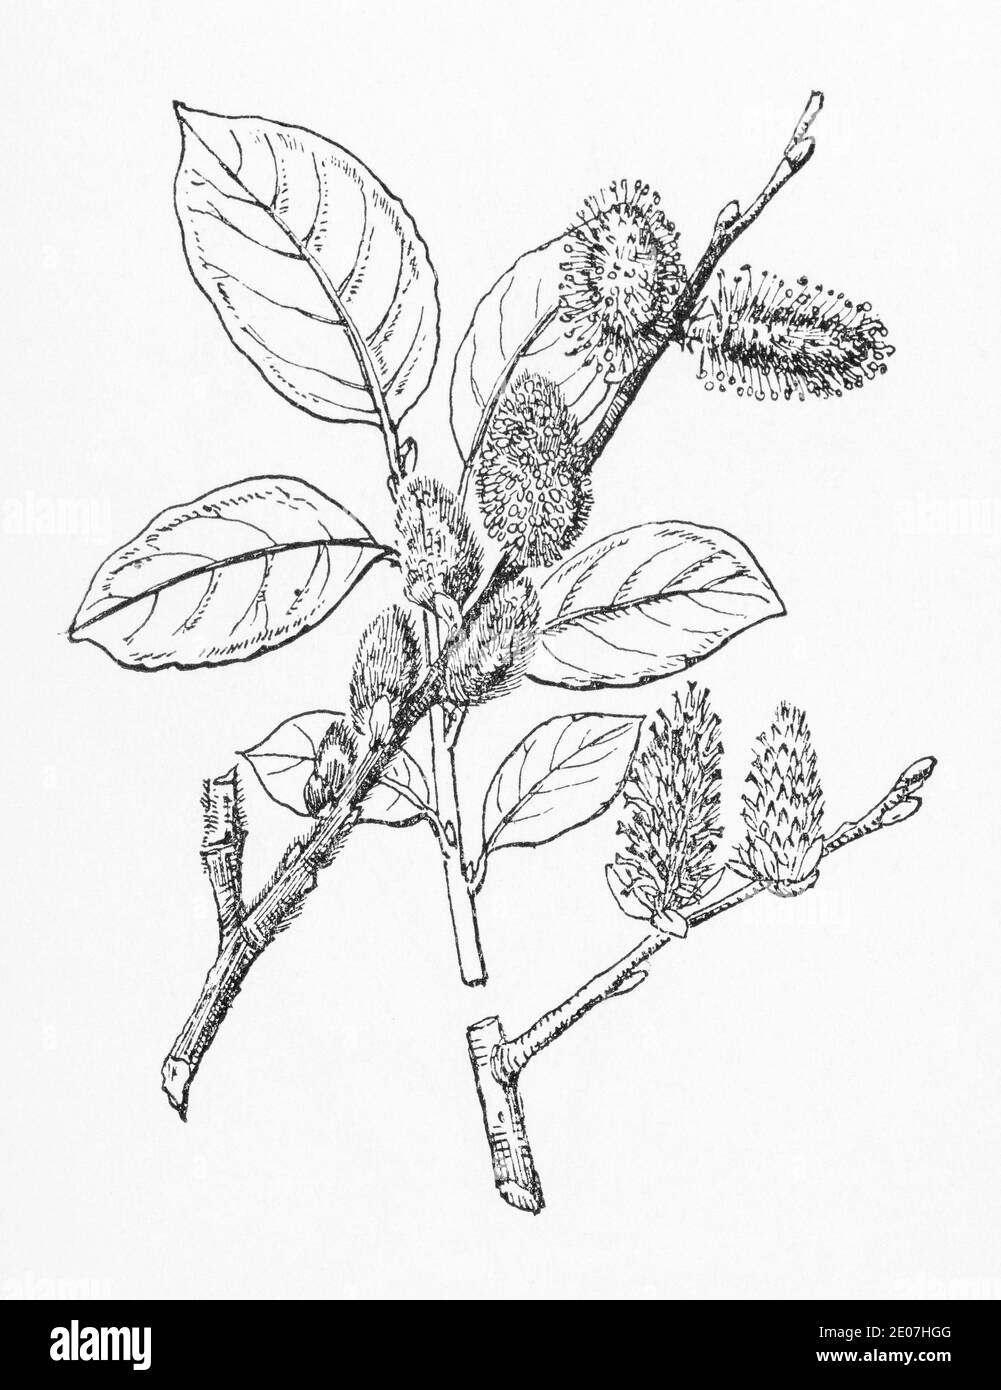 Alte botanische Illustration Gravur von Ziegenweide / Salix caprea. Traditionelle Heilkräuter Pflanze. Siehe Hinweise Stockfoto